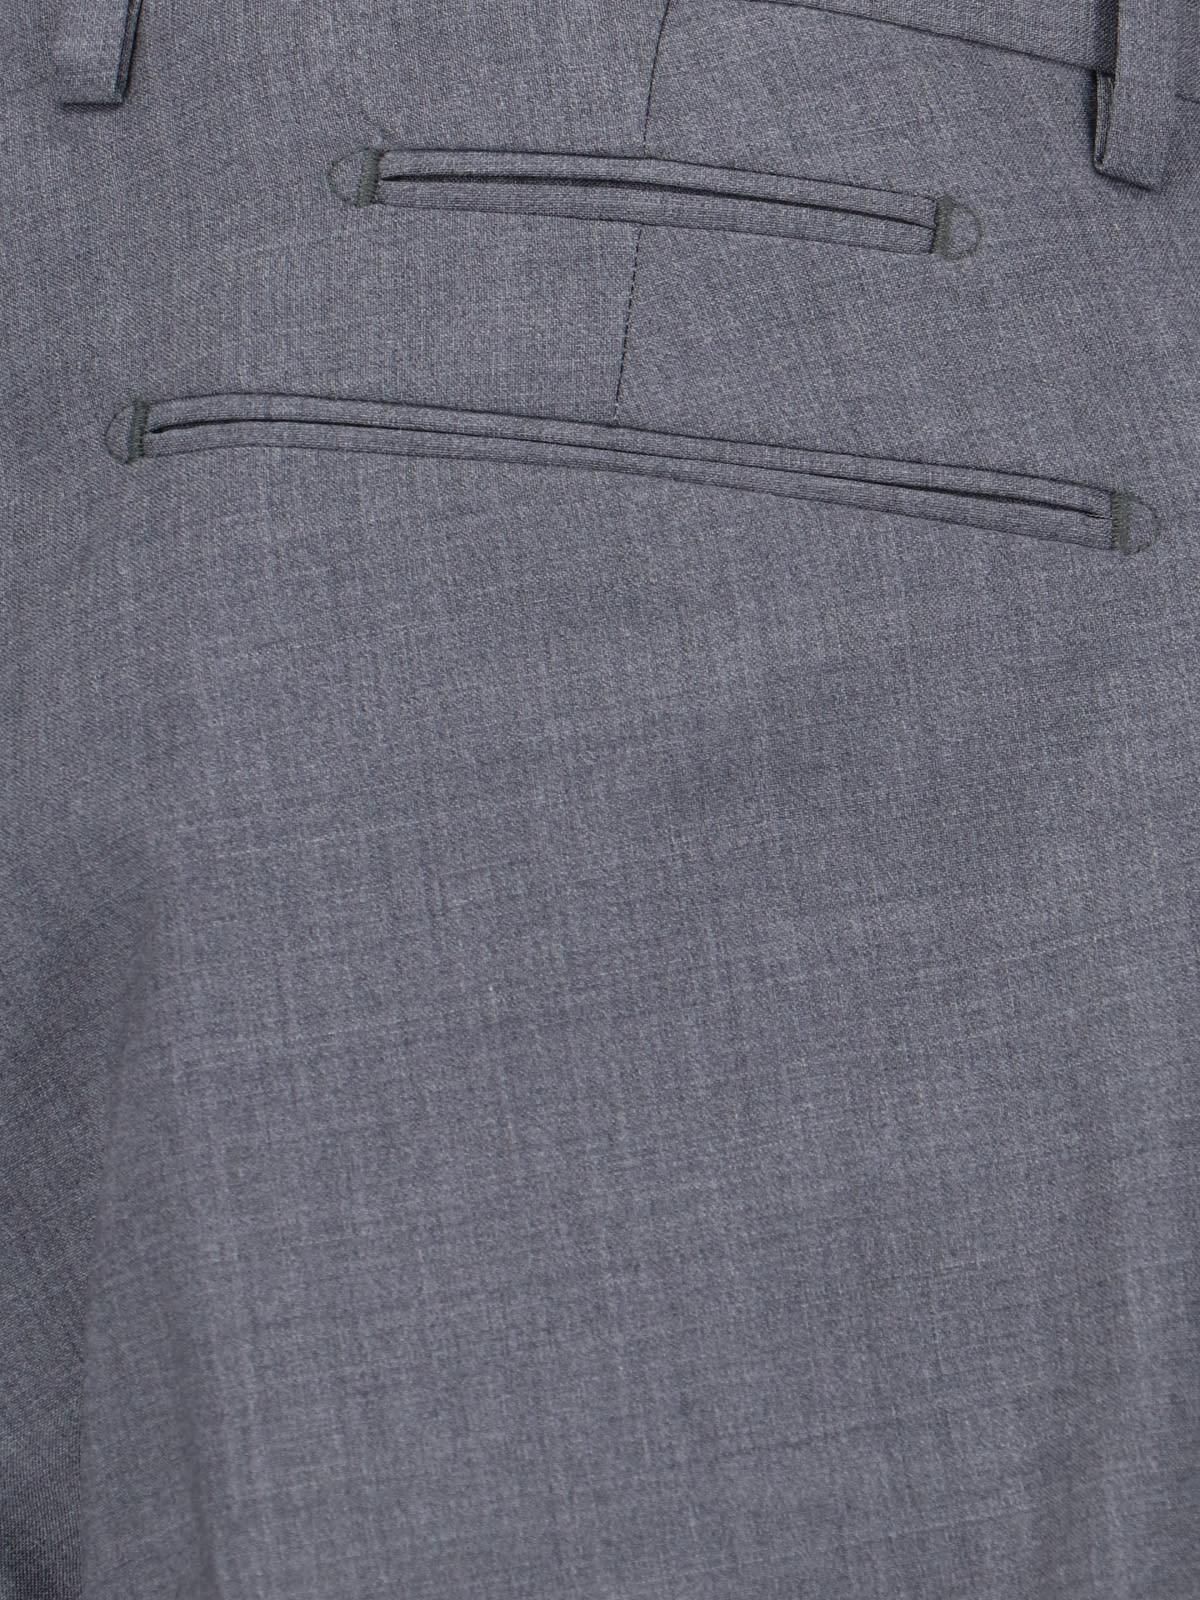 Shop Briglia 1949 Tailored Trousers In Gray